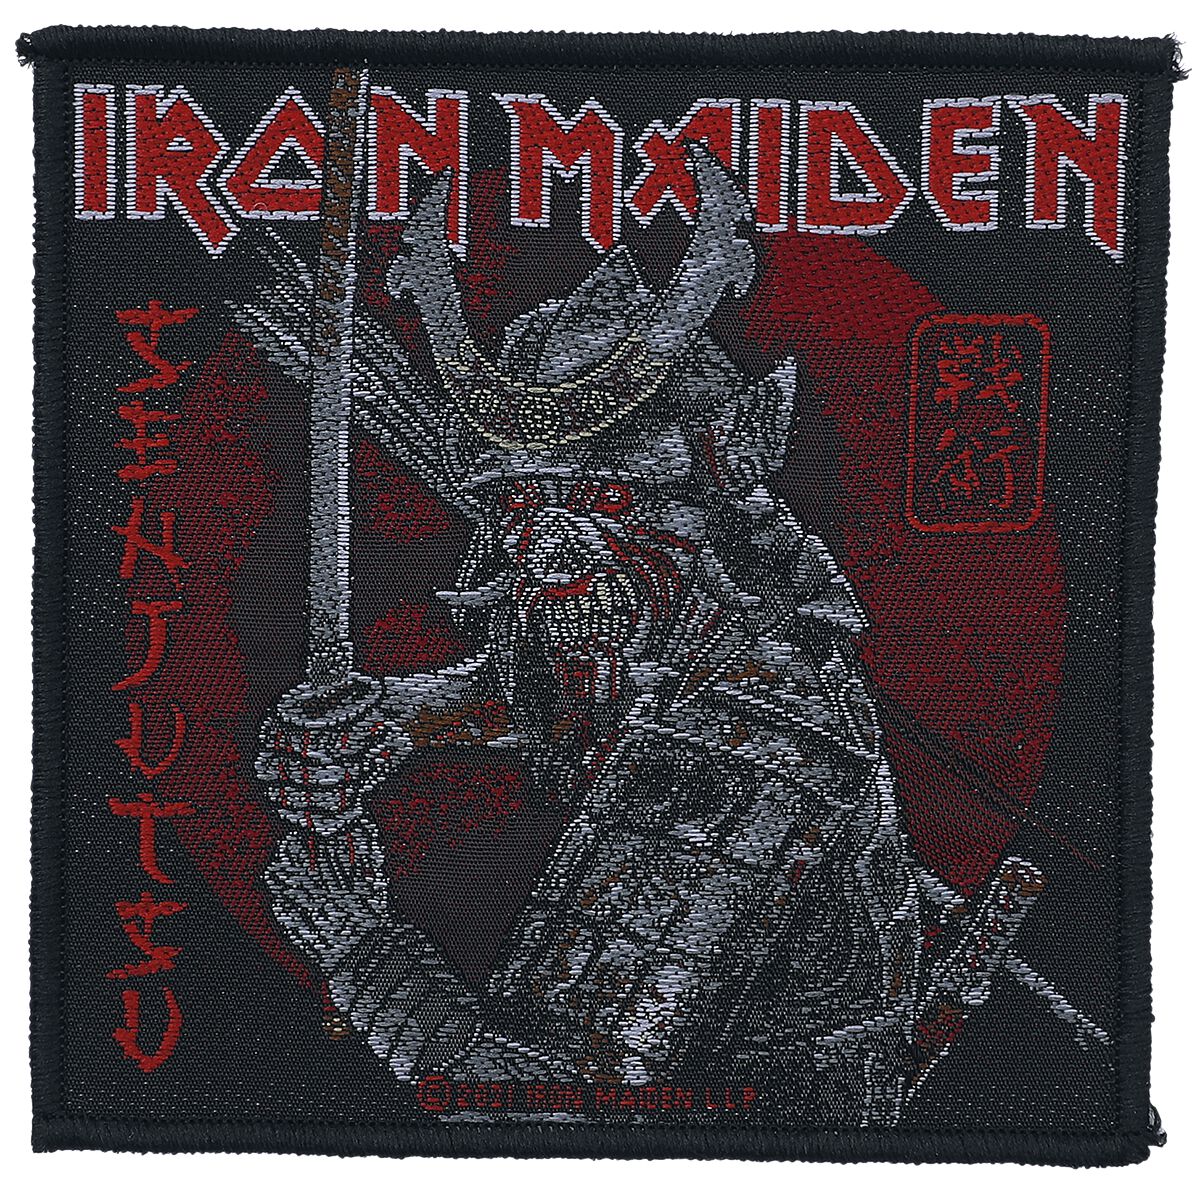 Iron Maiden Senjutsu Patch schwarz rot